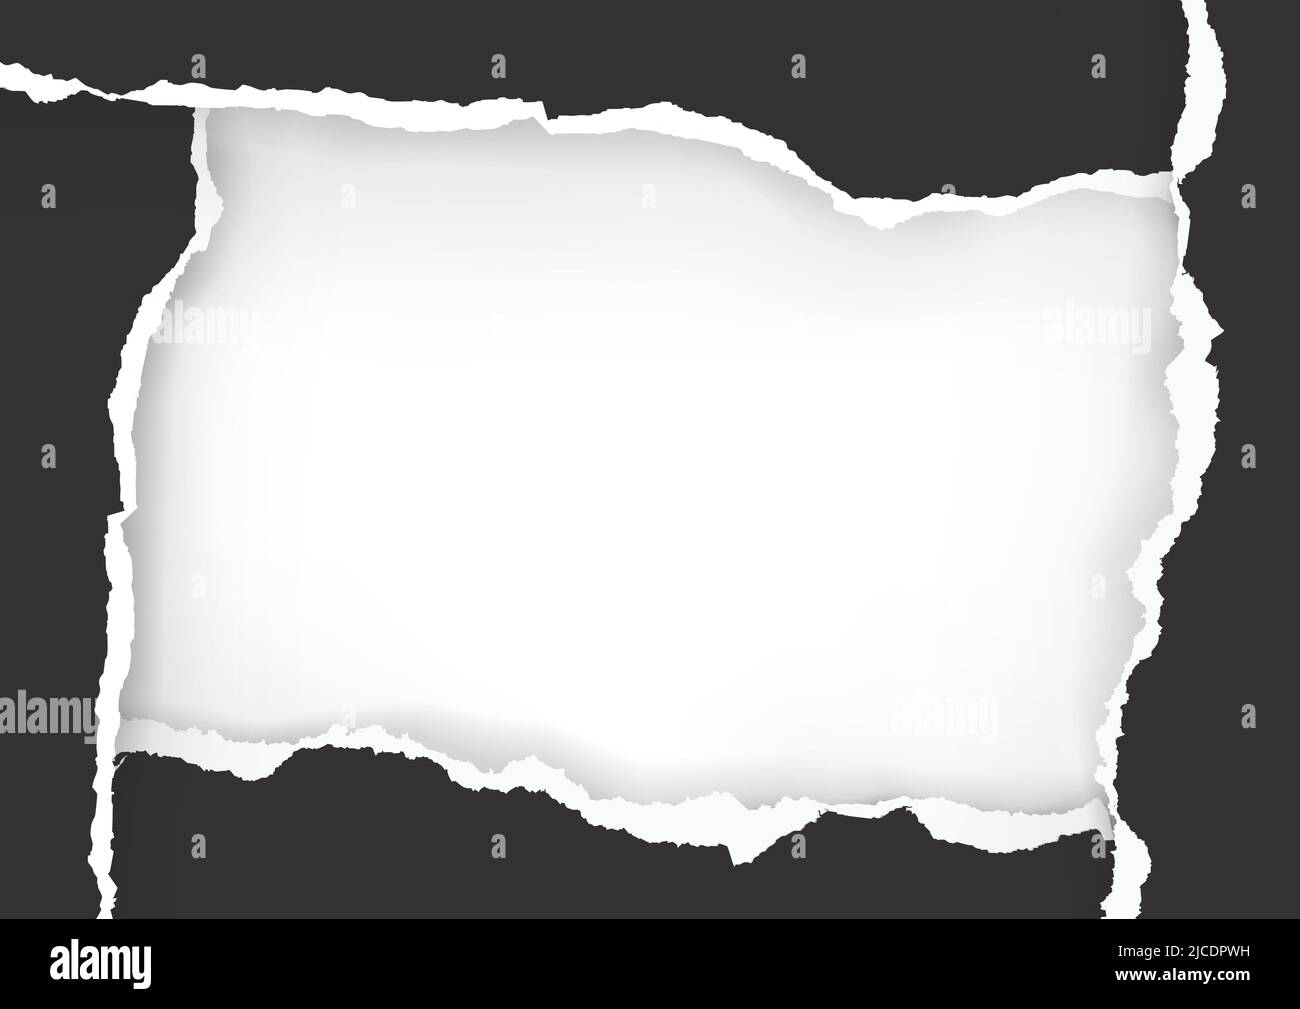 Cornice di carta strappata nera, modello di striscione. Immagine della carta strappata in nero con spazio per l'immagine o il testo. Vettore disponibile. Illustrazione Vettoriale